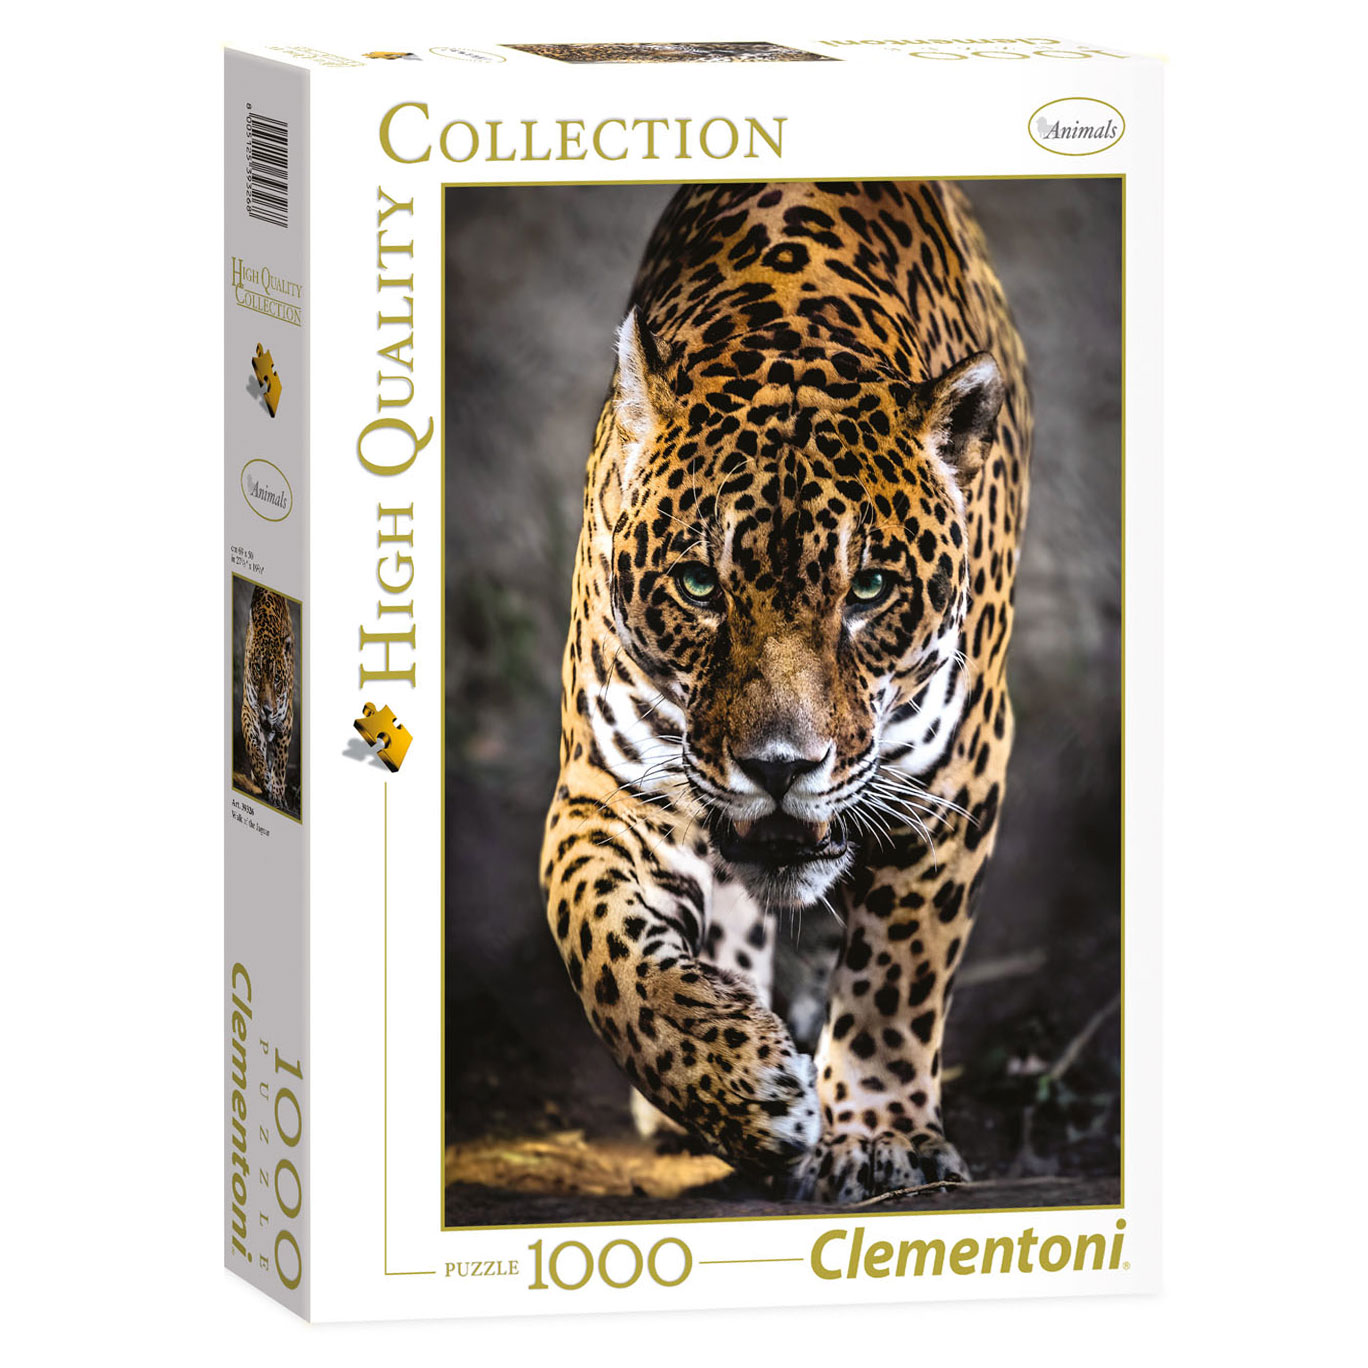 Clementoni Puzzle Jaguar, 1000 Teile.